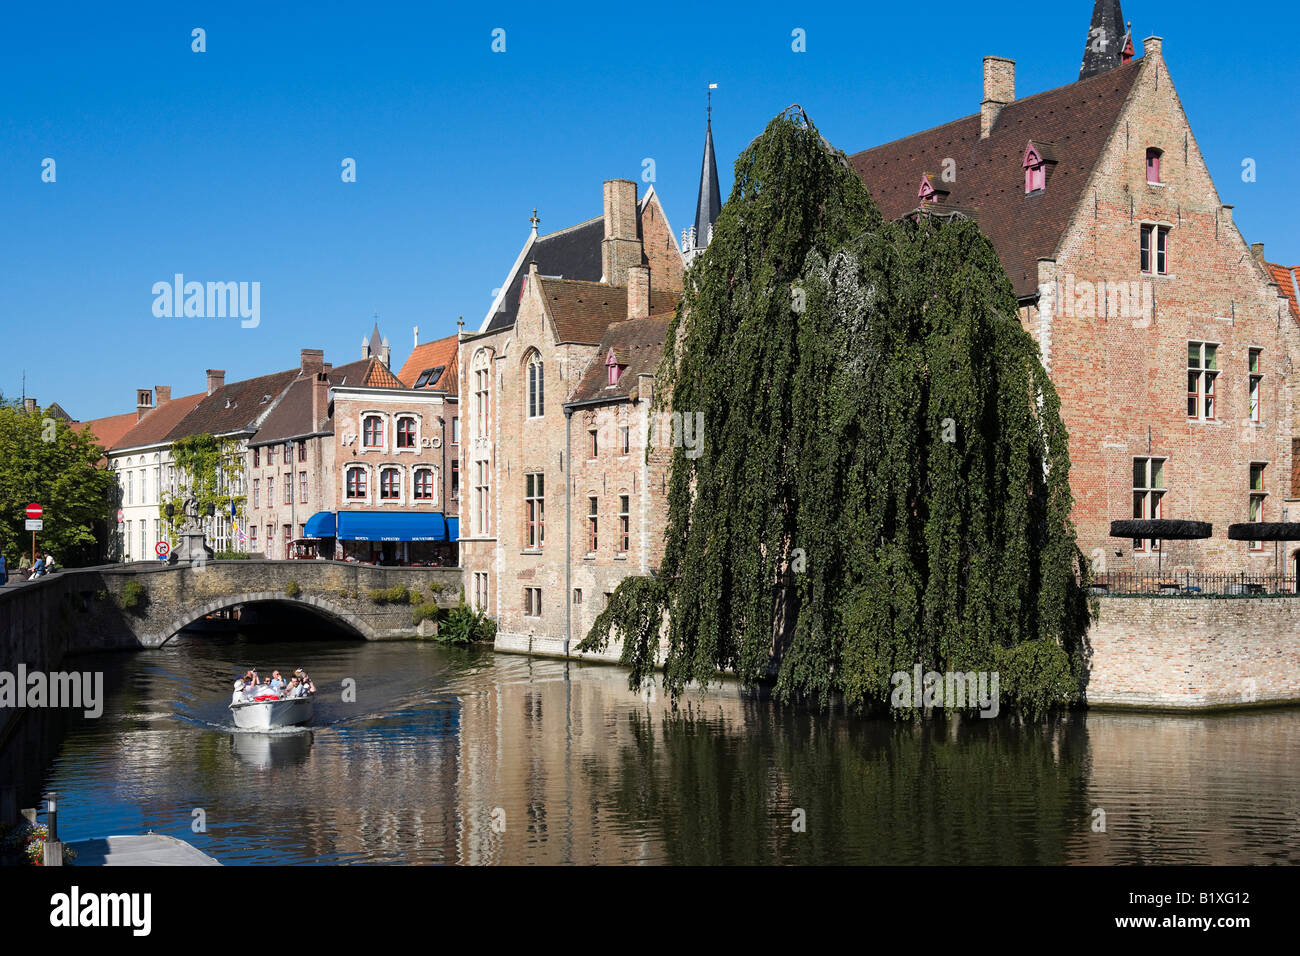 Voyage en bateau sur un canal dans la vieille ville, Bruges, Belgique Banque D'Images